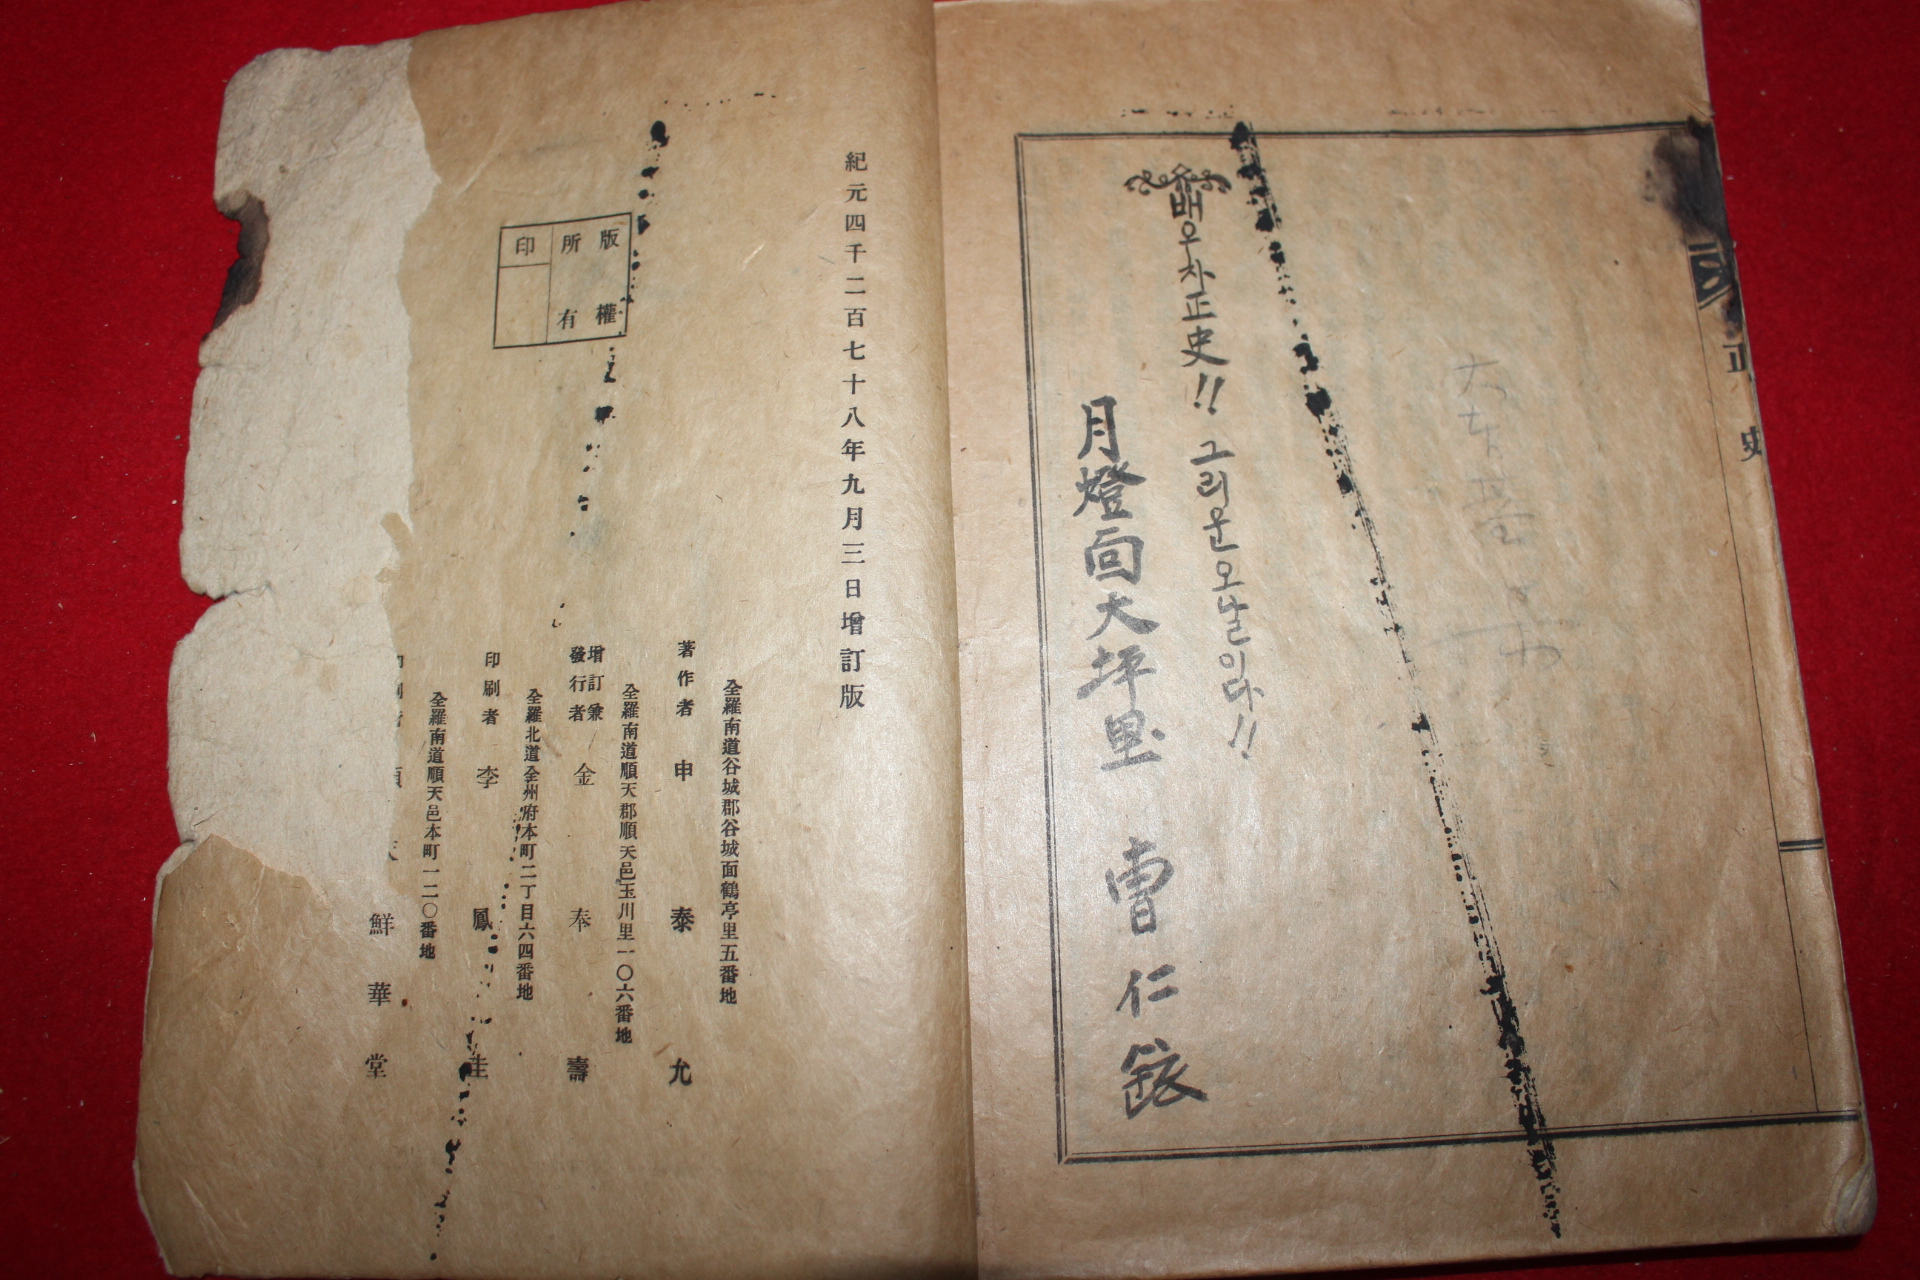 1945년간행 배달조선 정사(正史) 1책완질